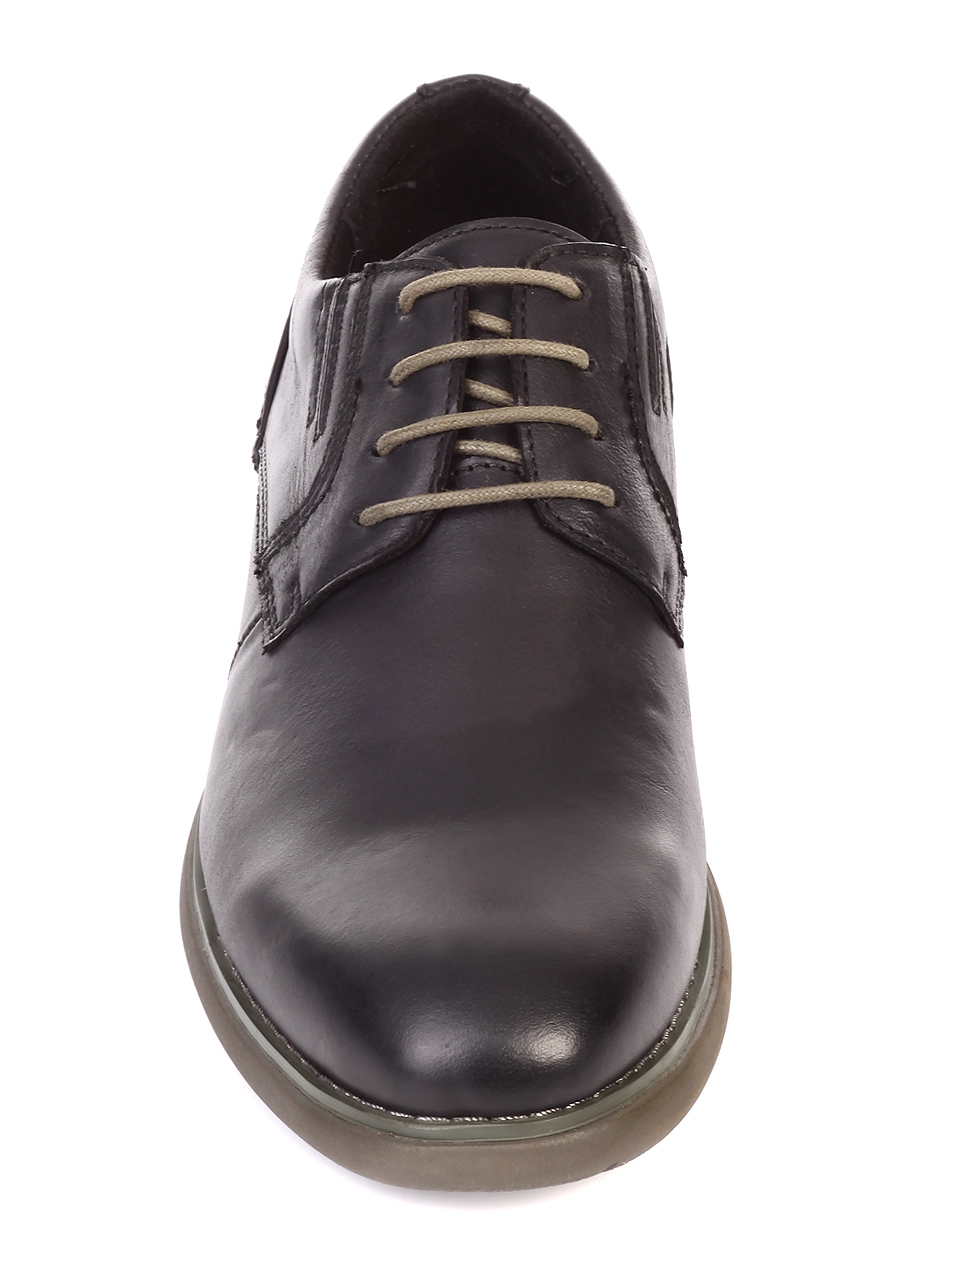 Ежедневни мъжки обувки от естествена кожа 7N-19773 black